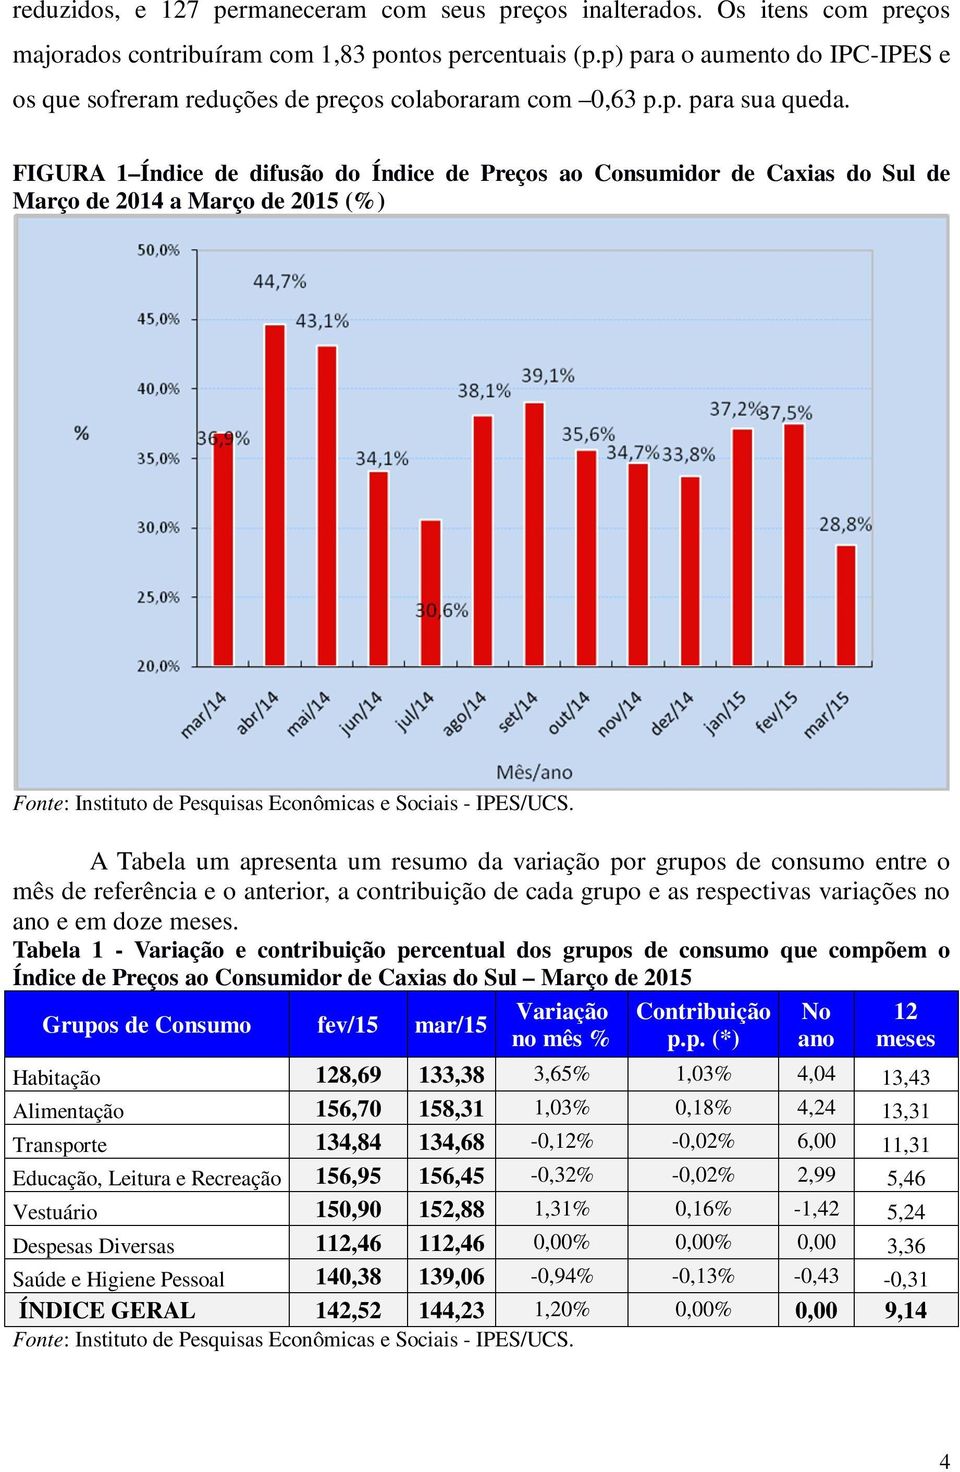 FIGURA 1 Índice de difusão do Índice de Preços ao Consumidor de Caxias do Sul de Março de 2014 a Março de 2015 (%) Fonte: Instituto de Pesquisas Econômicas e Sociais - IPES/UCS.